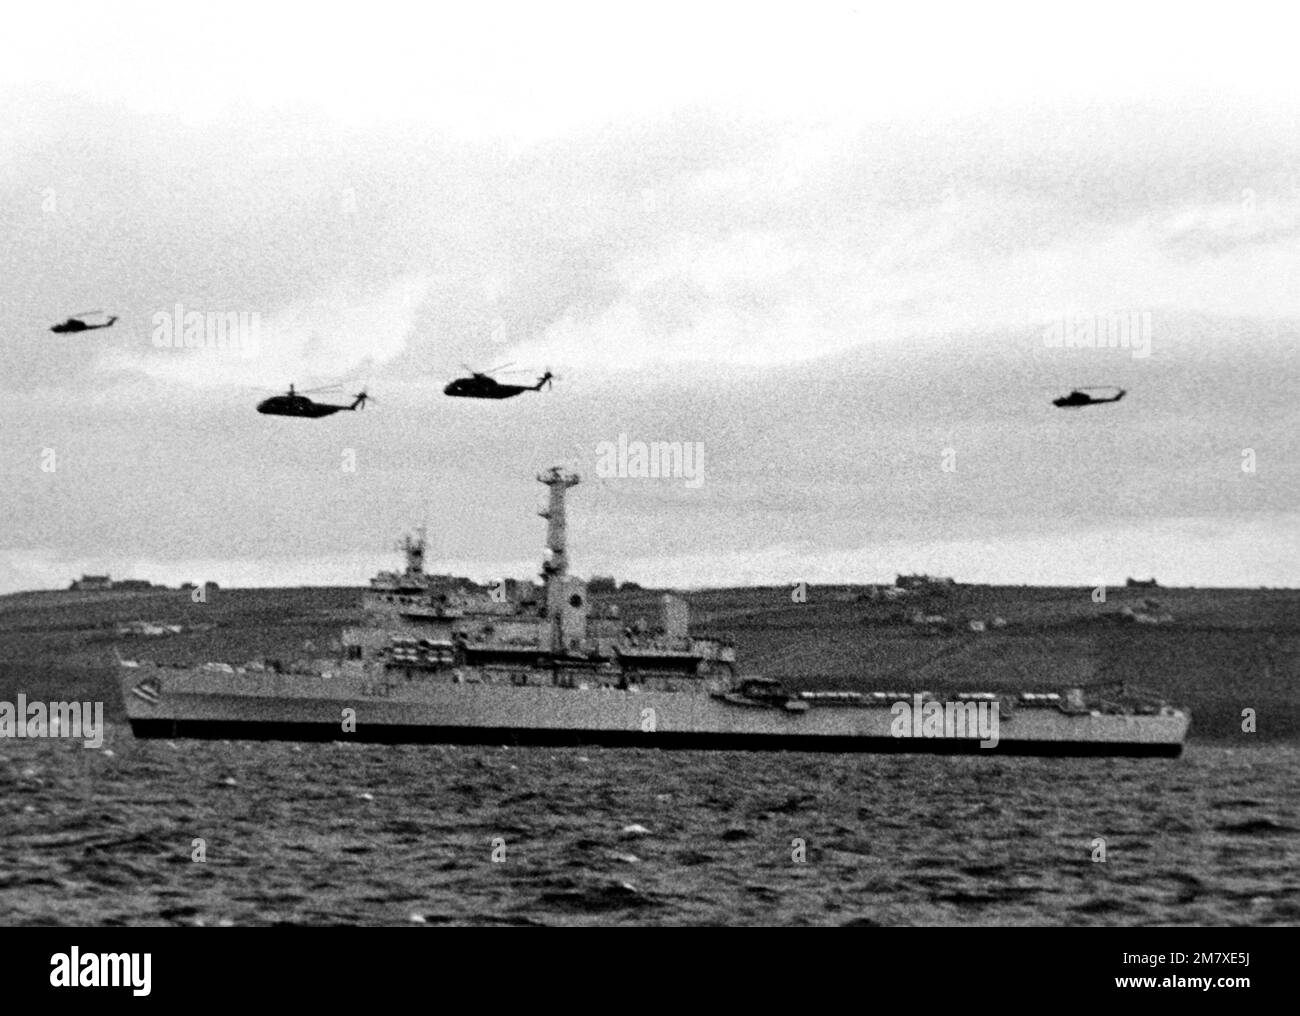 Des hélicoptères marins UH-1 Iroquois et CH-53 Sea Stallion survolent le navire amphibie britannique HMS FEARLESS pendant l'exercice Northern Wedding. Objet opération/série: BASE DE MARIAGE DU NORD: Sinclair'S Bay pays: Écosse (SCT) Banque D'Images